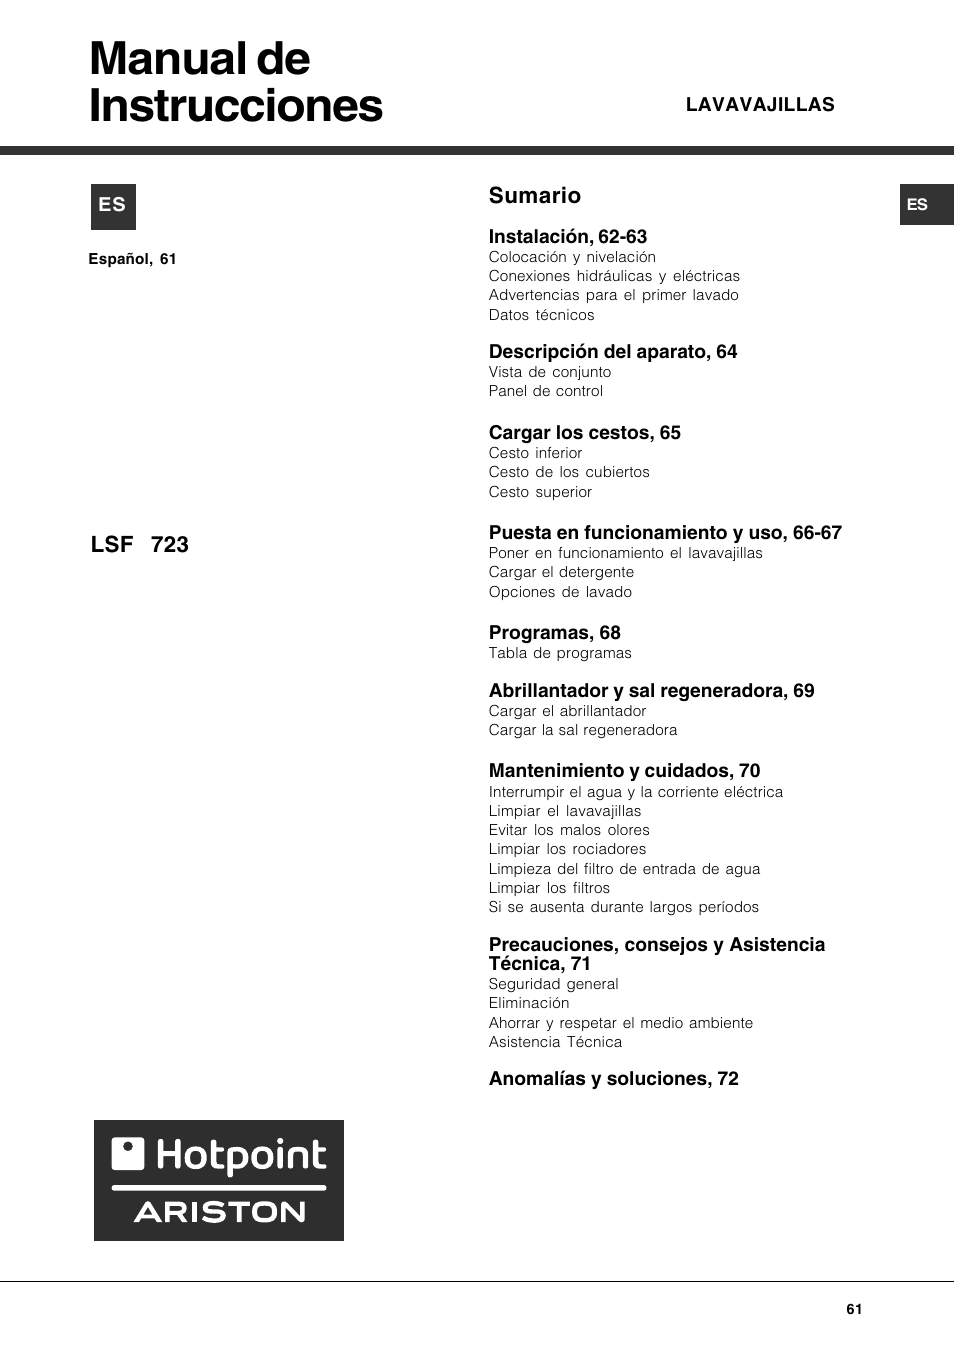 Manual de instrucciones, Sumario, Lsf 723 | Hotpoint Ariston LSF 723 User  Manual | Page 61 / 84